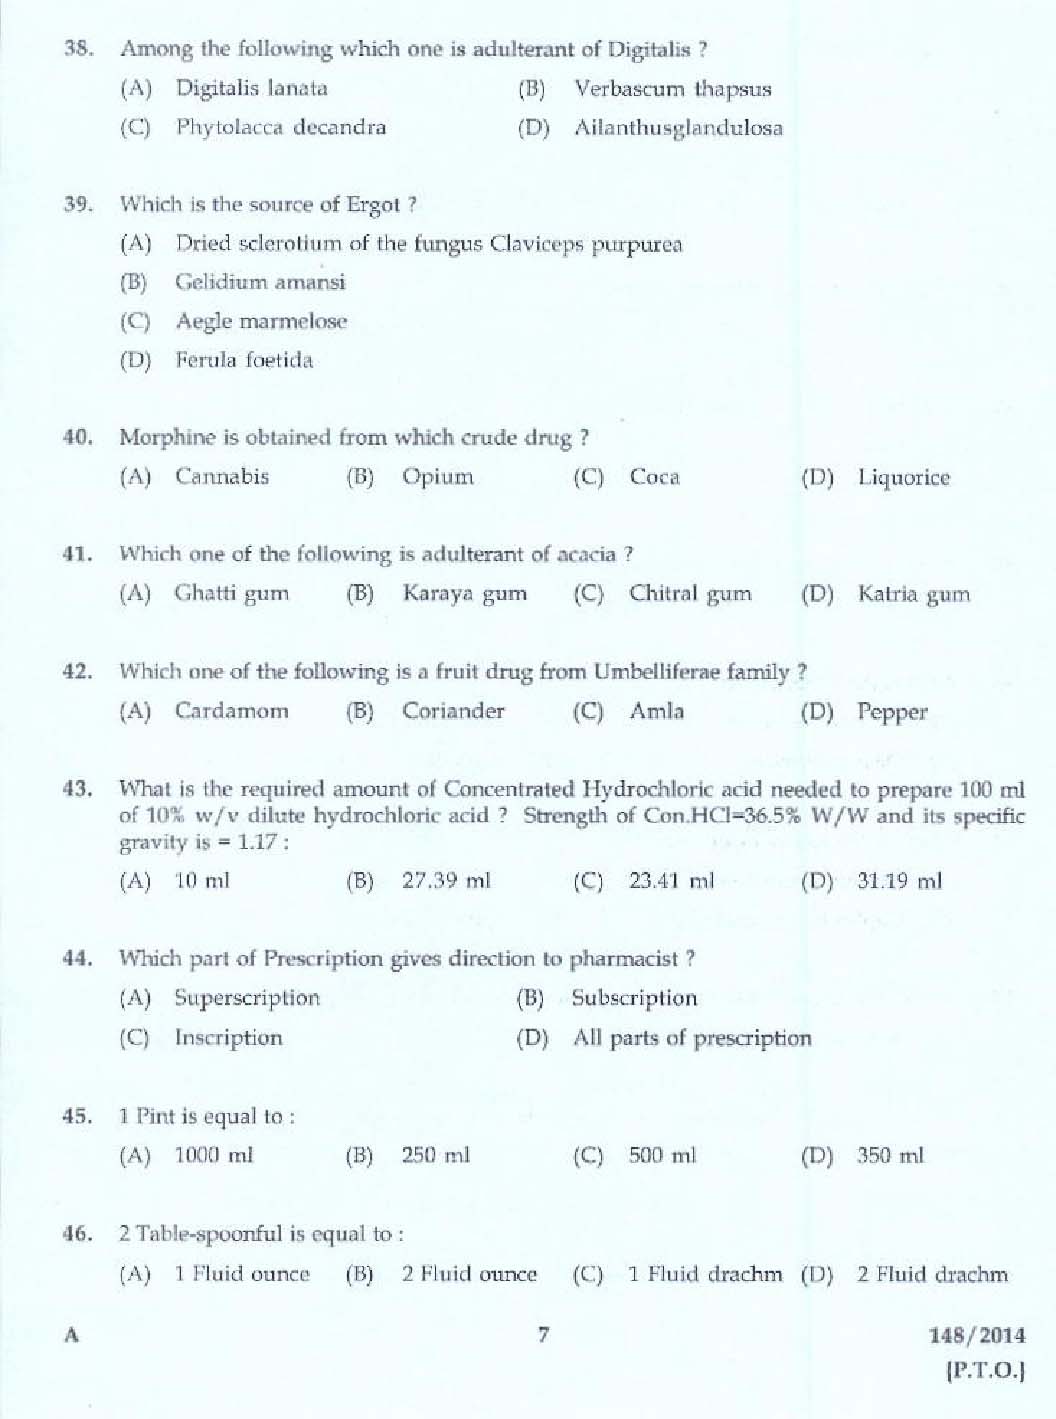 KPSC Pharmacist Grade II Health Services Exam 2014 Code 1482014 5